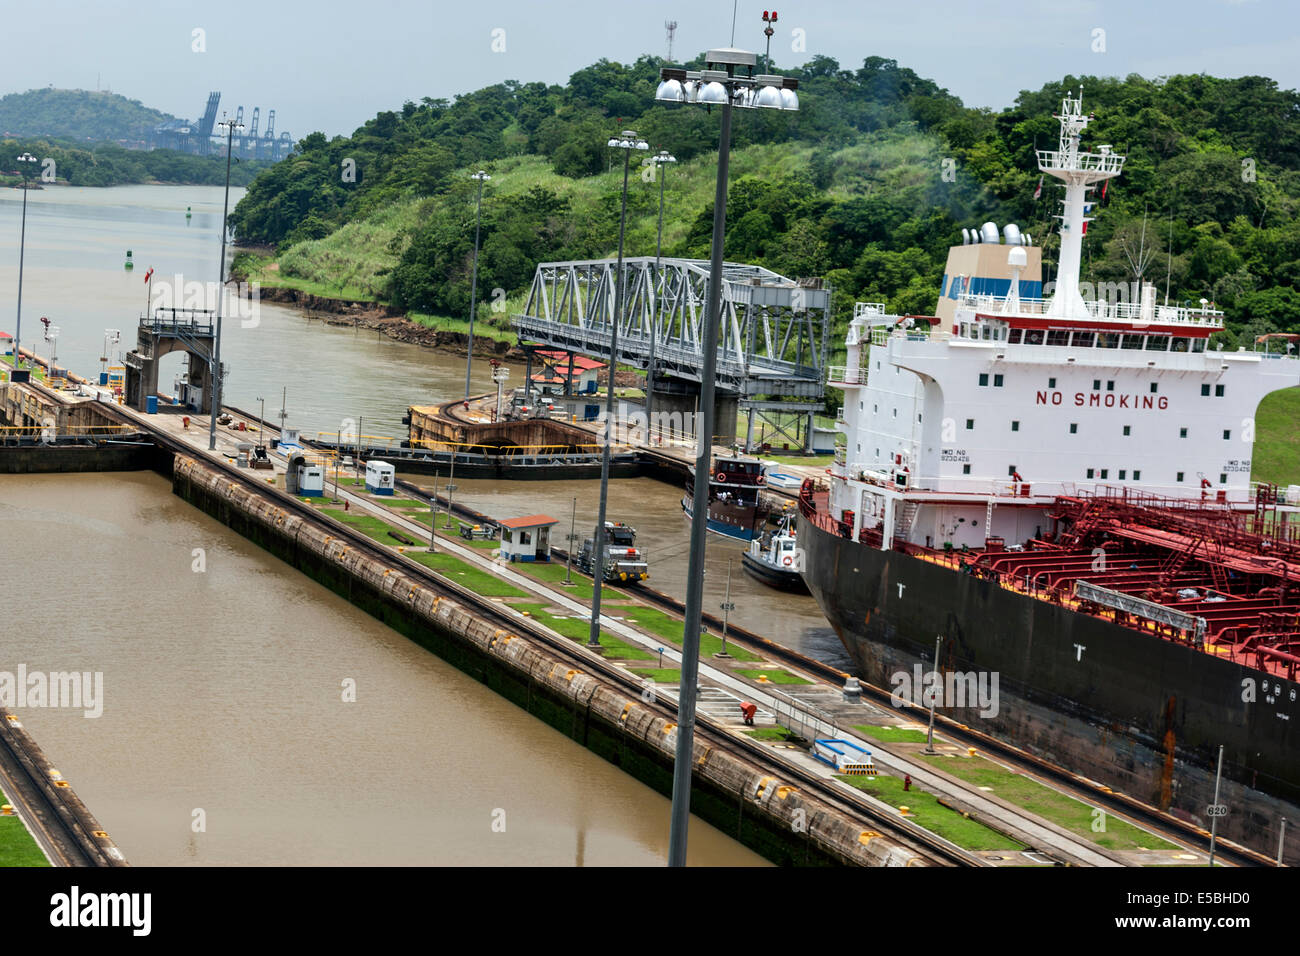 Lobelia Frachtschiff unter Senegal Fahne in Miraflores-Schleusen und Schleppern in Miraflores-Schleuse, Panama-Kanal Stockfoto